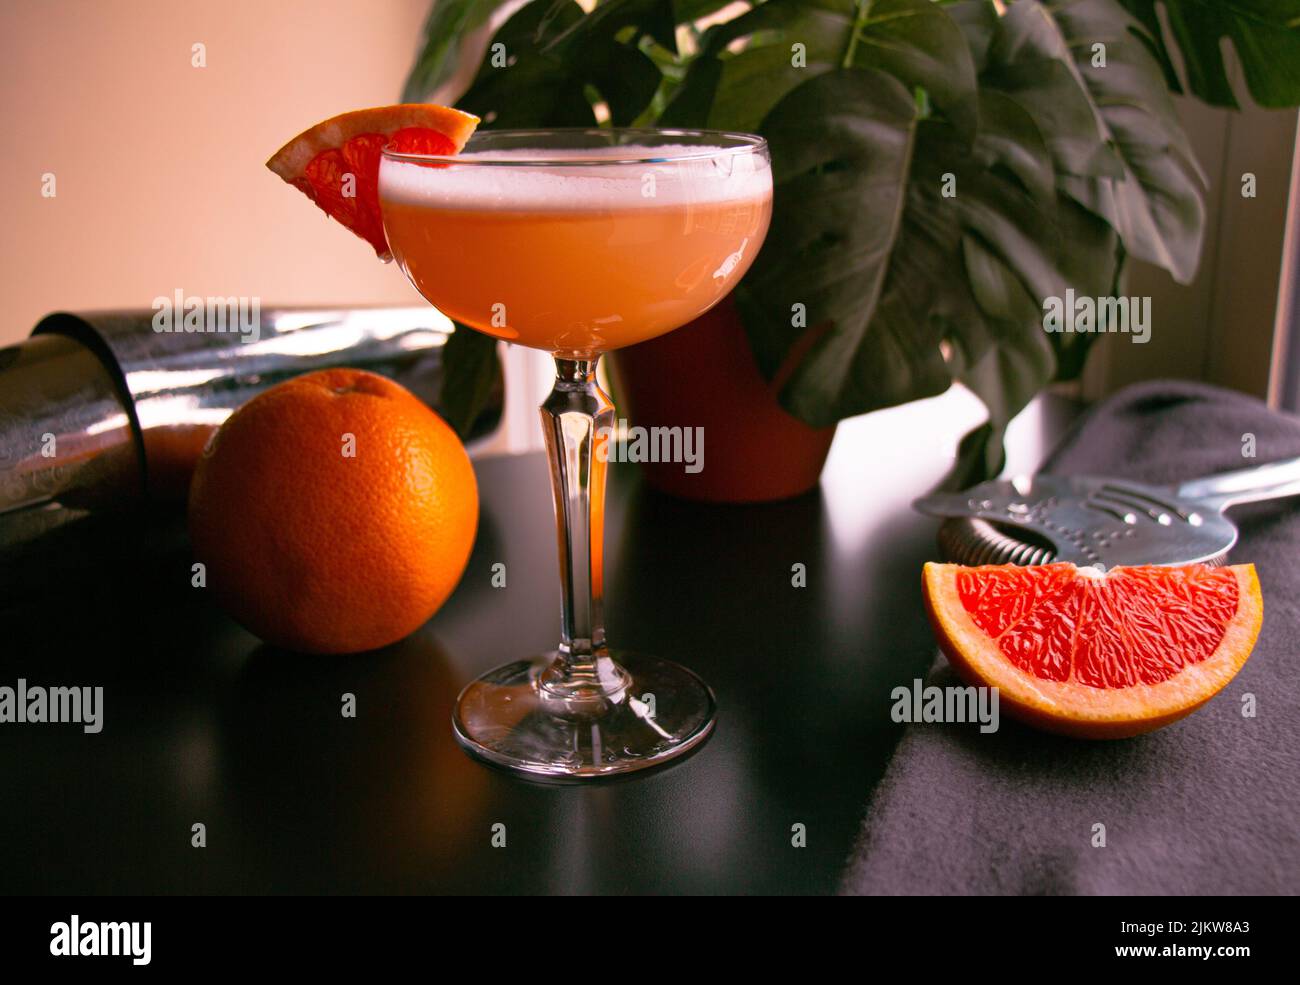 Nahaufnahme eines Grapefruit-Cocktails aus Coupé-Glas mit weißem Schaumstoff auf einem schwarzen Tisch Stockfoto